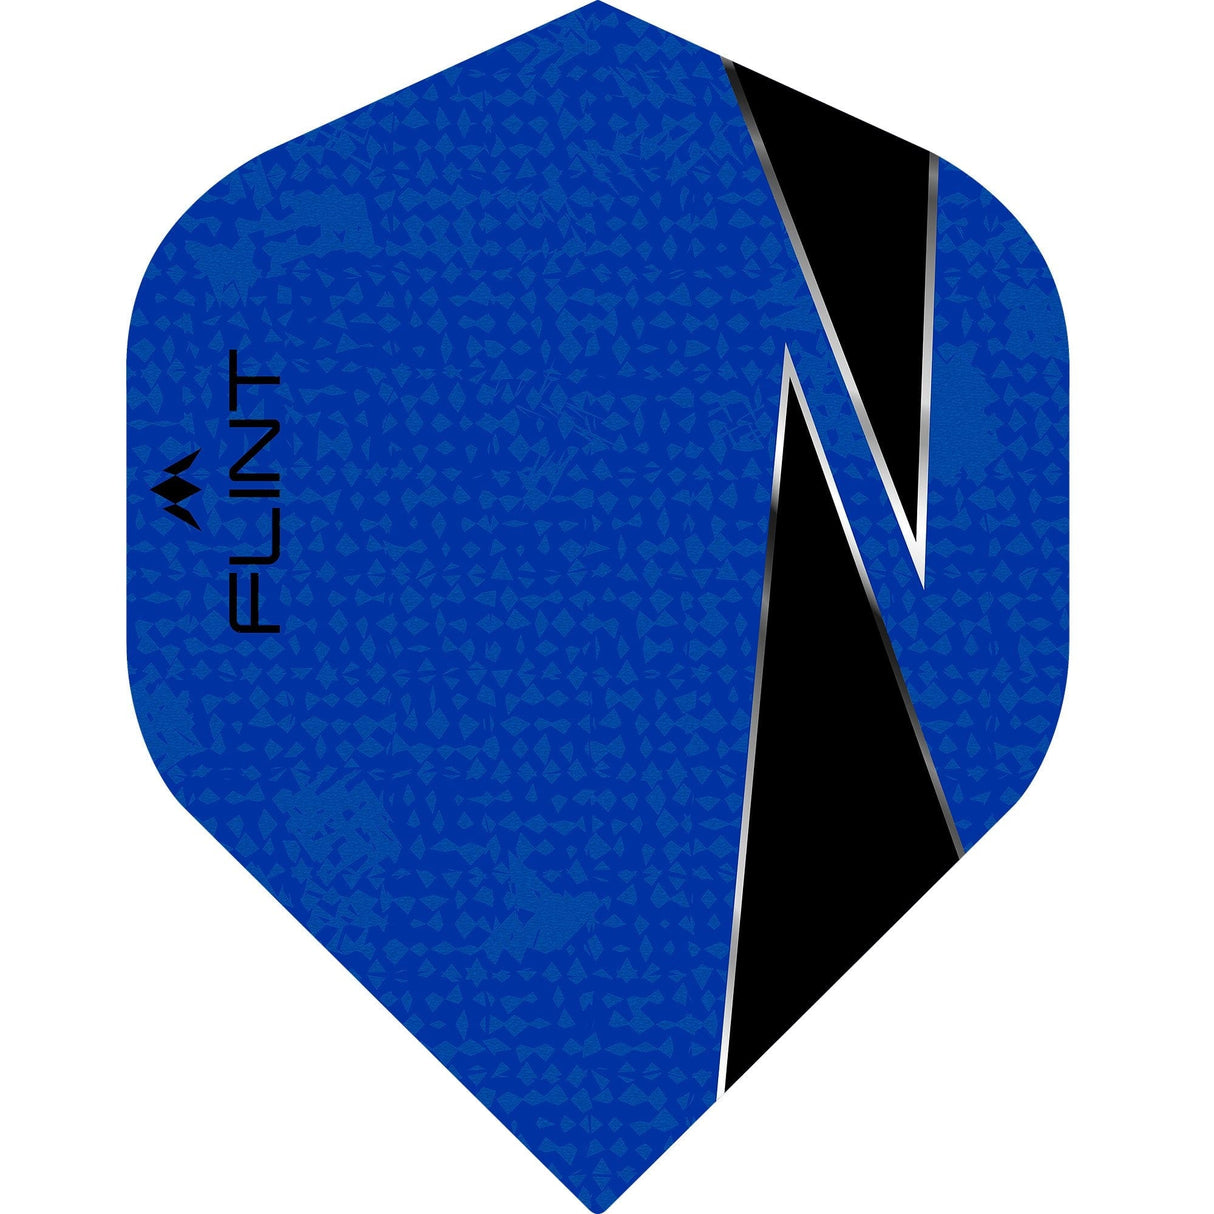 Mission Flint-X Dart Flights - 100 Micron - No2 - Std Blue